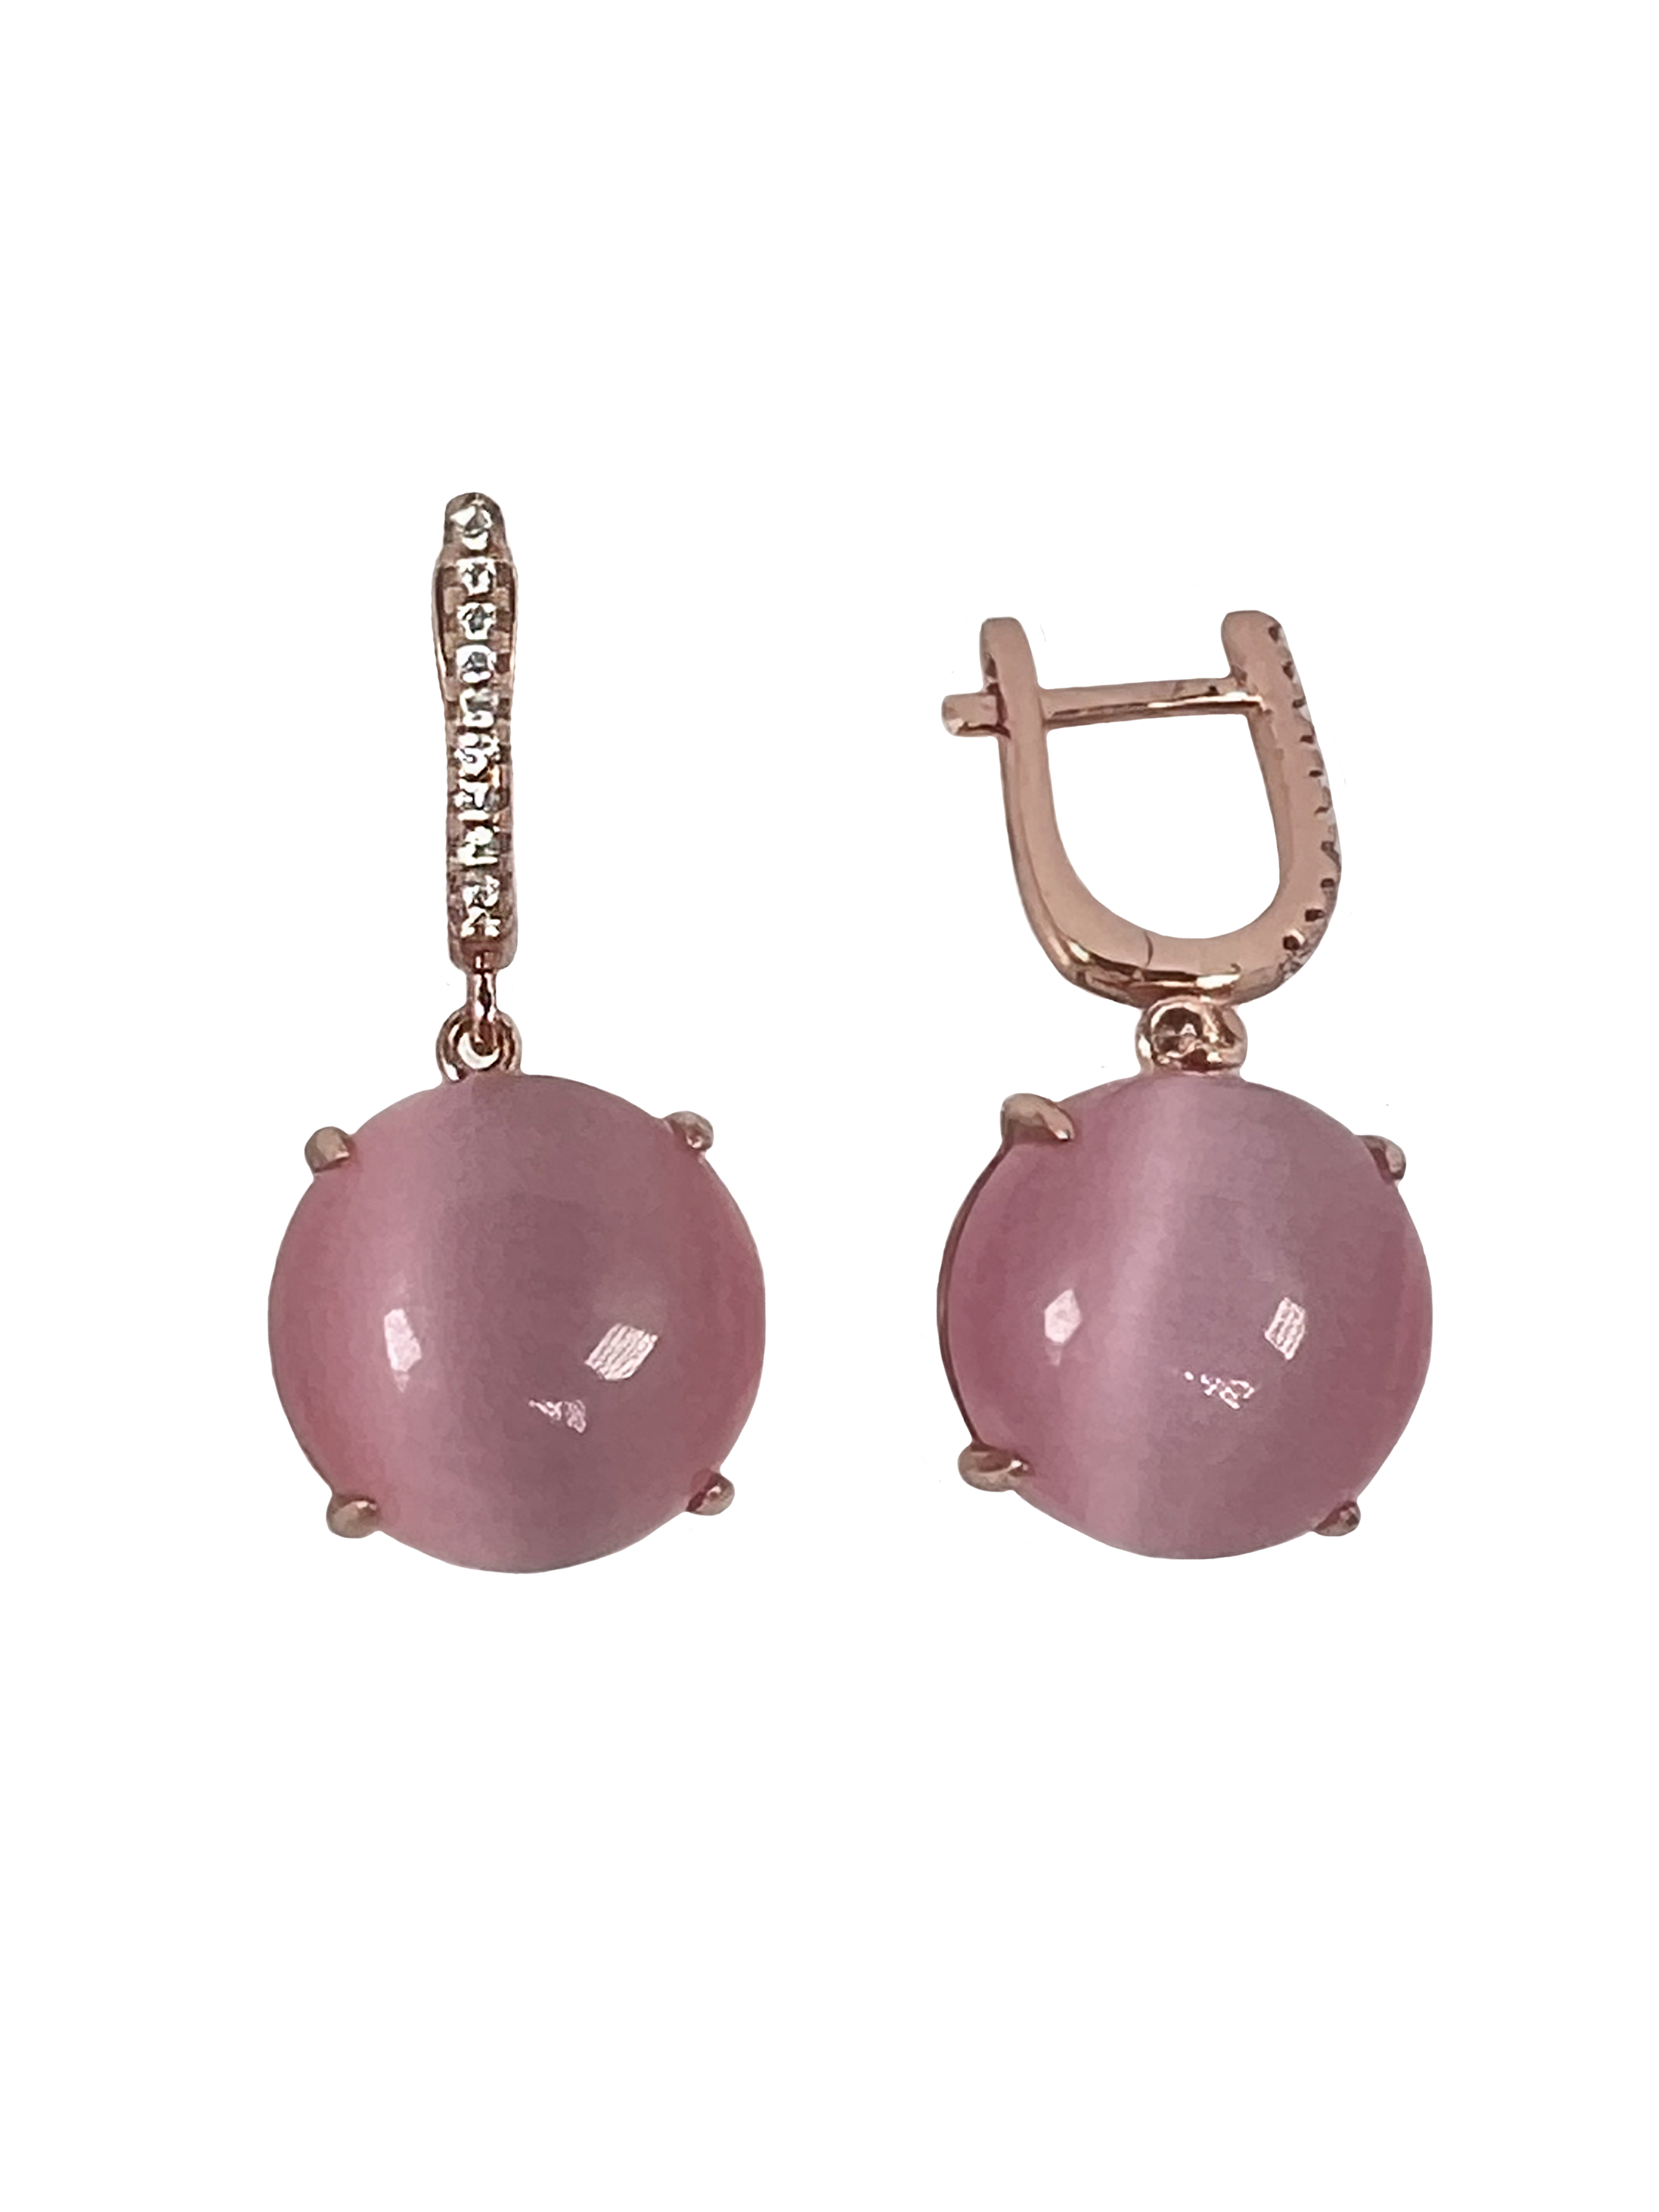 Zilveren oorbellen met oppervlaktebehandeling en roze stenen